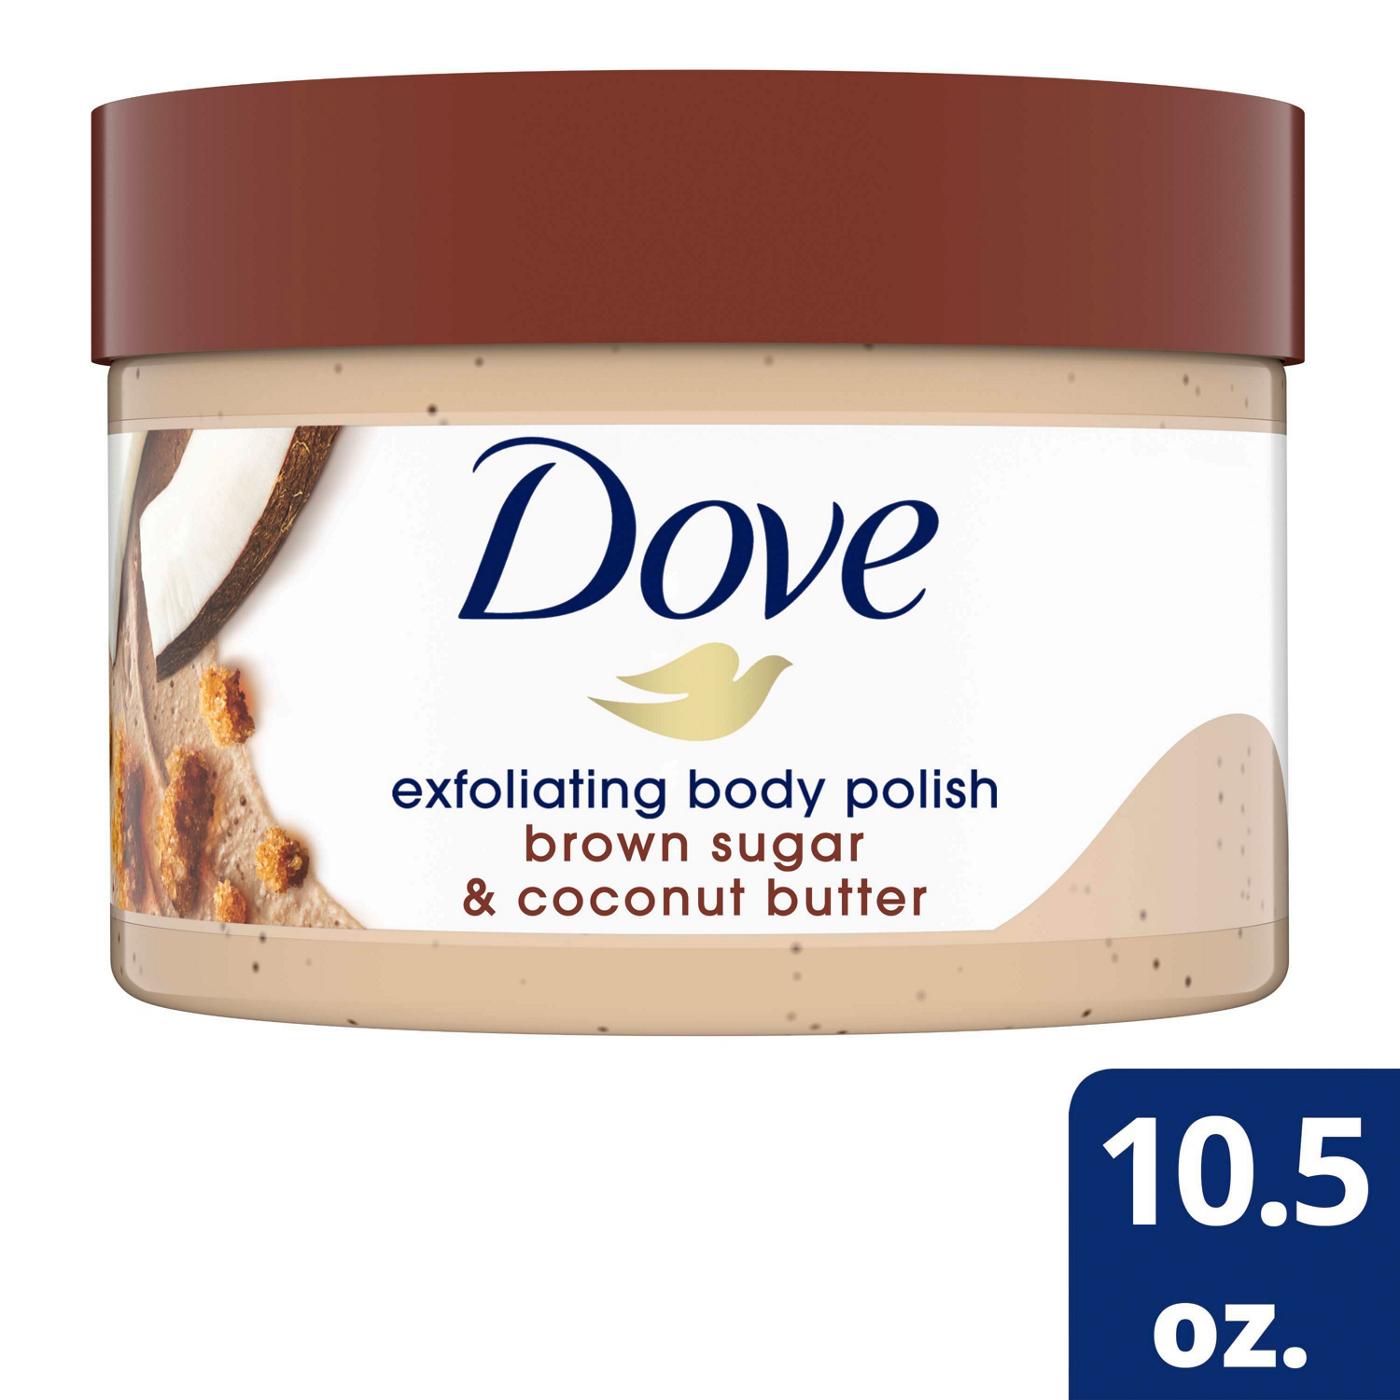 Dove Exfoliating Body Polish Brown Sugar & Coconut Butter Scrub; image 3 of 3